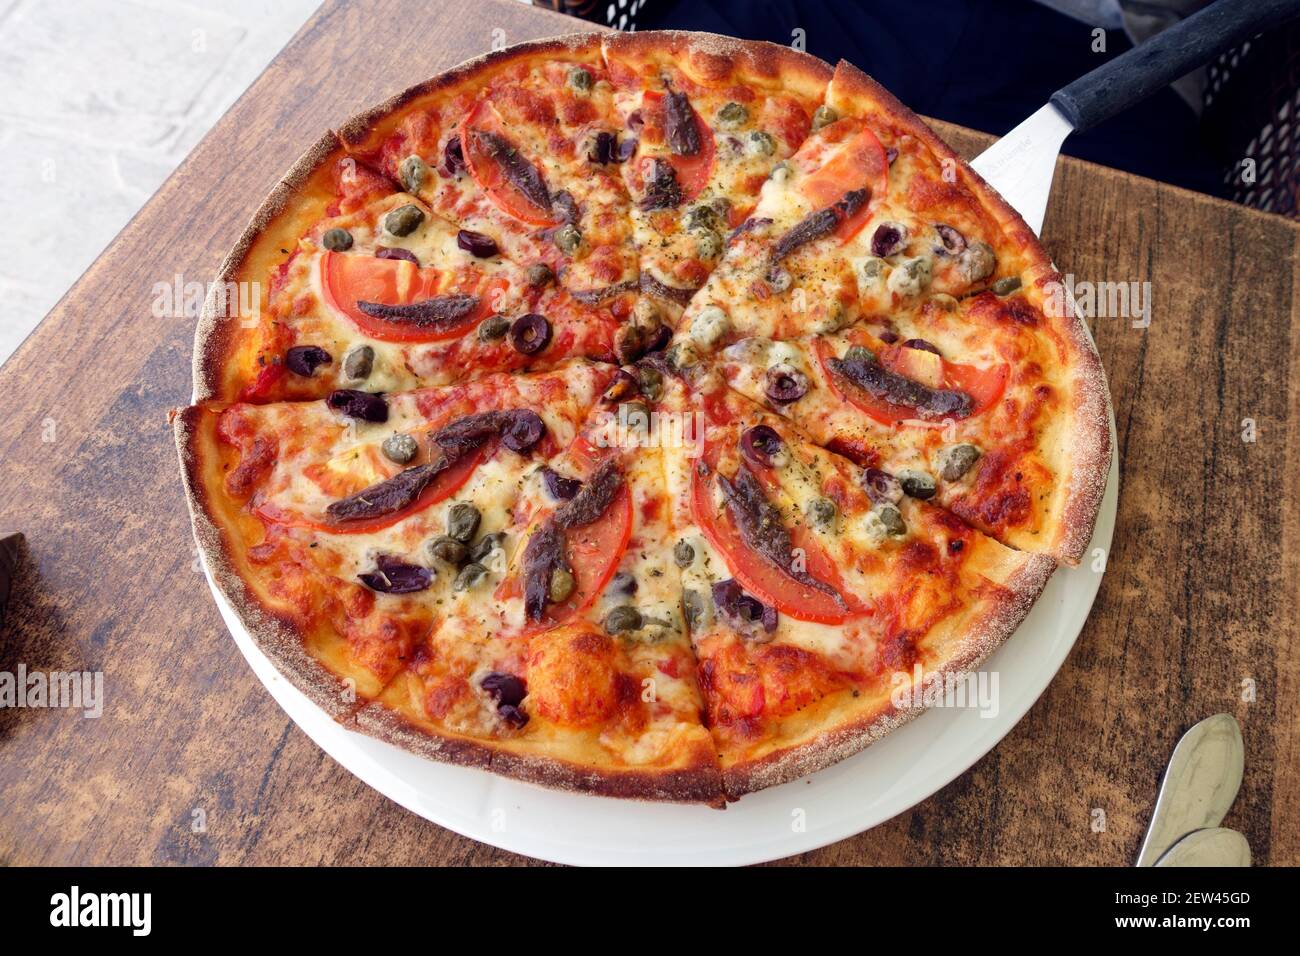 Pizza de anchoa y tomate en una paleta de pizza de mango largo En una taberna griega en la isla de Kos Foto de stock